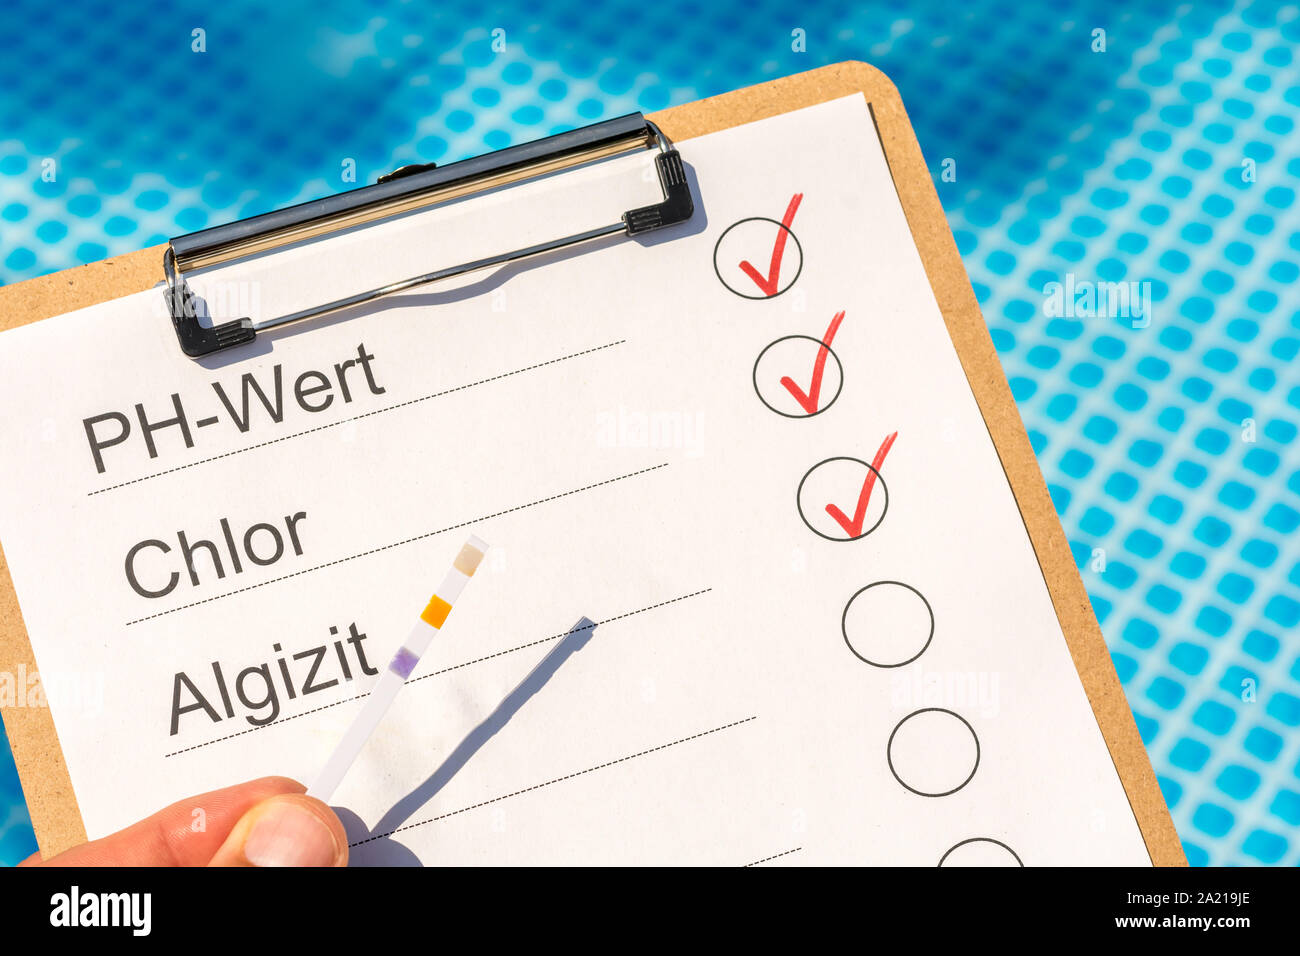 Die Kontrolle der Wasserqualität des Pools mit Hilfe eines Teststreifens mit den Worten PH-Wert, Chlor und Algizid in deutscher Sprache Stockfoto